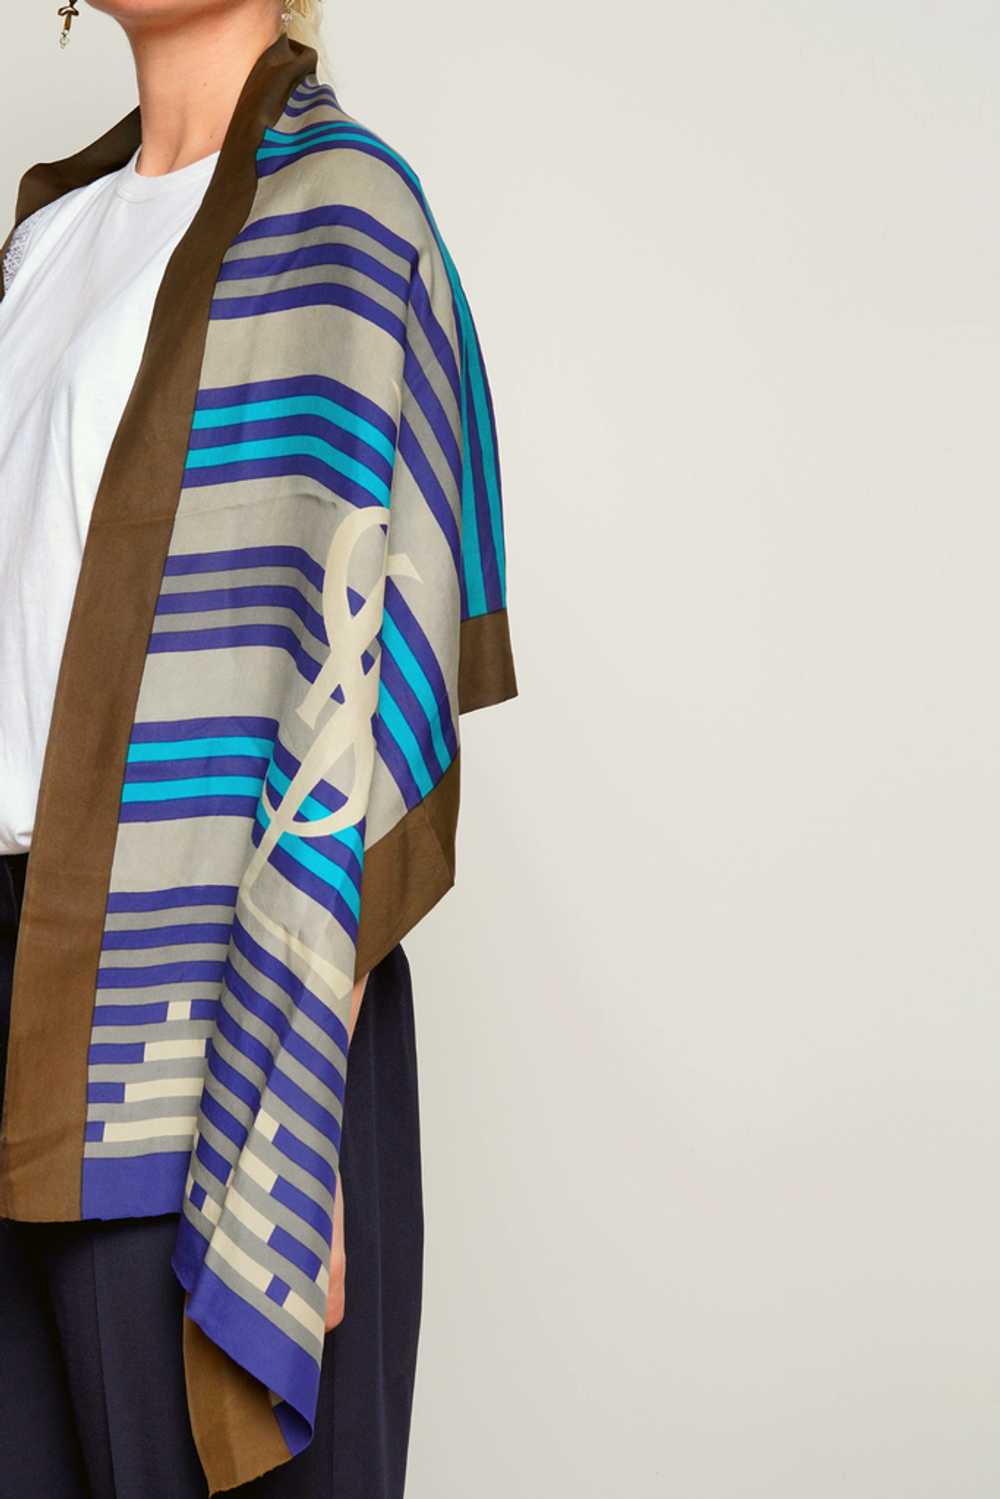 YSL Scarf Blue Striped Silk Shawl. - image 2